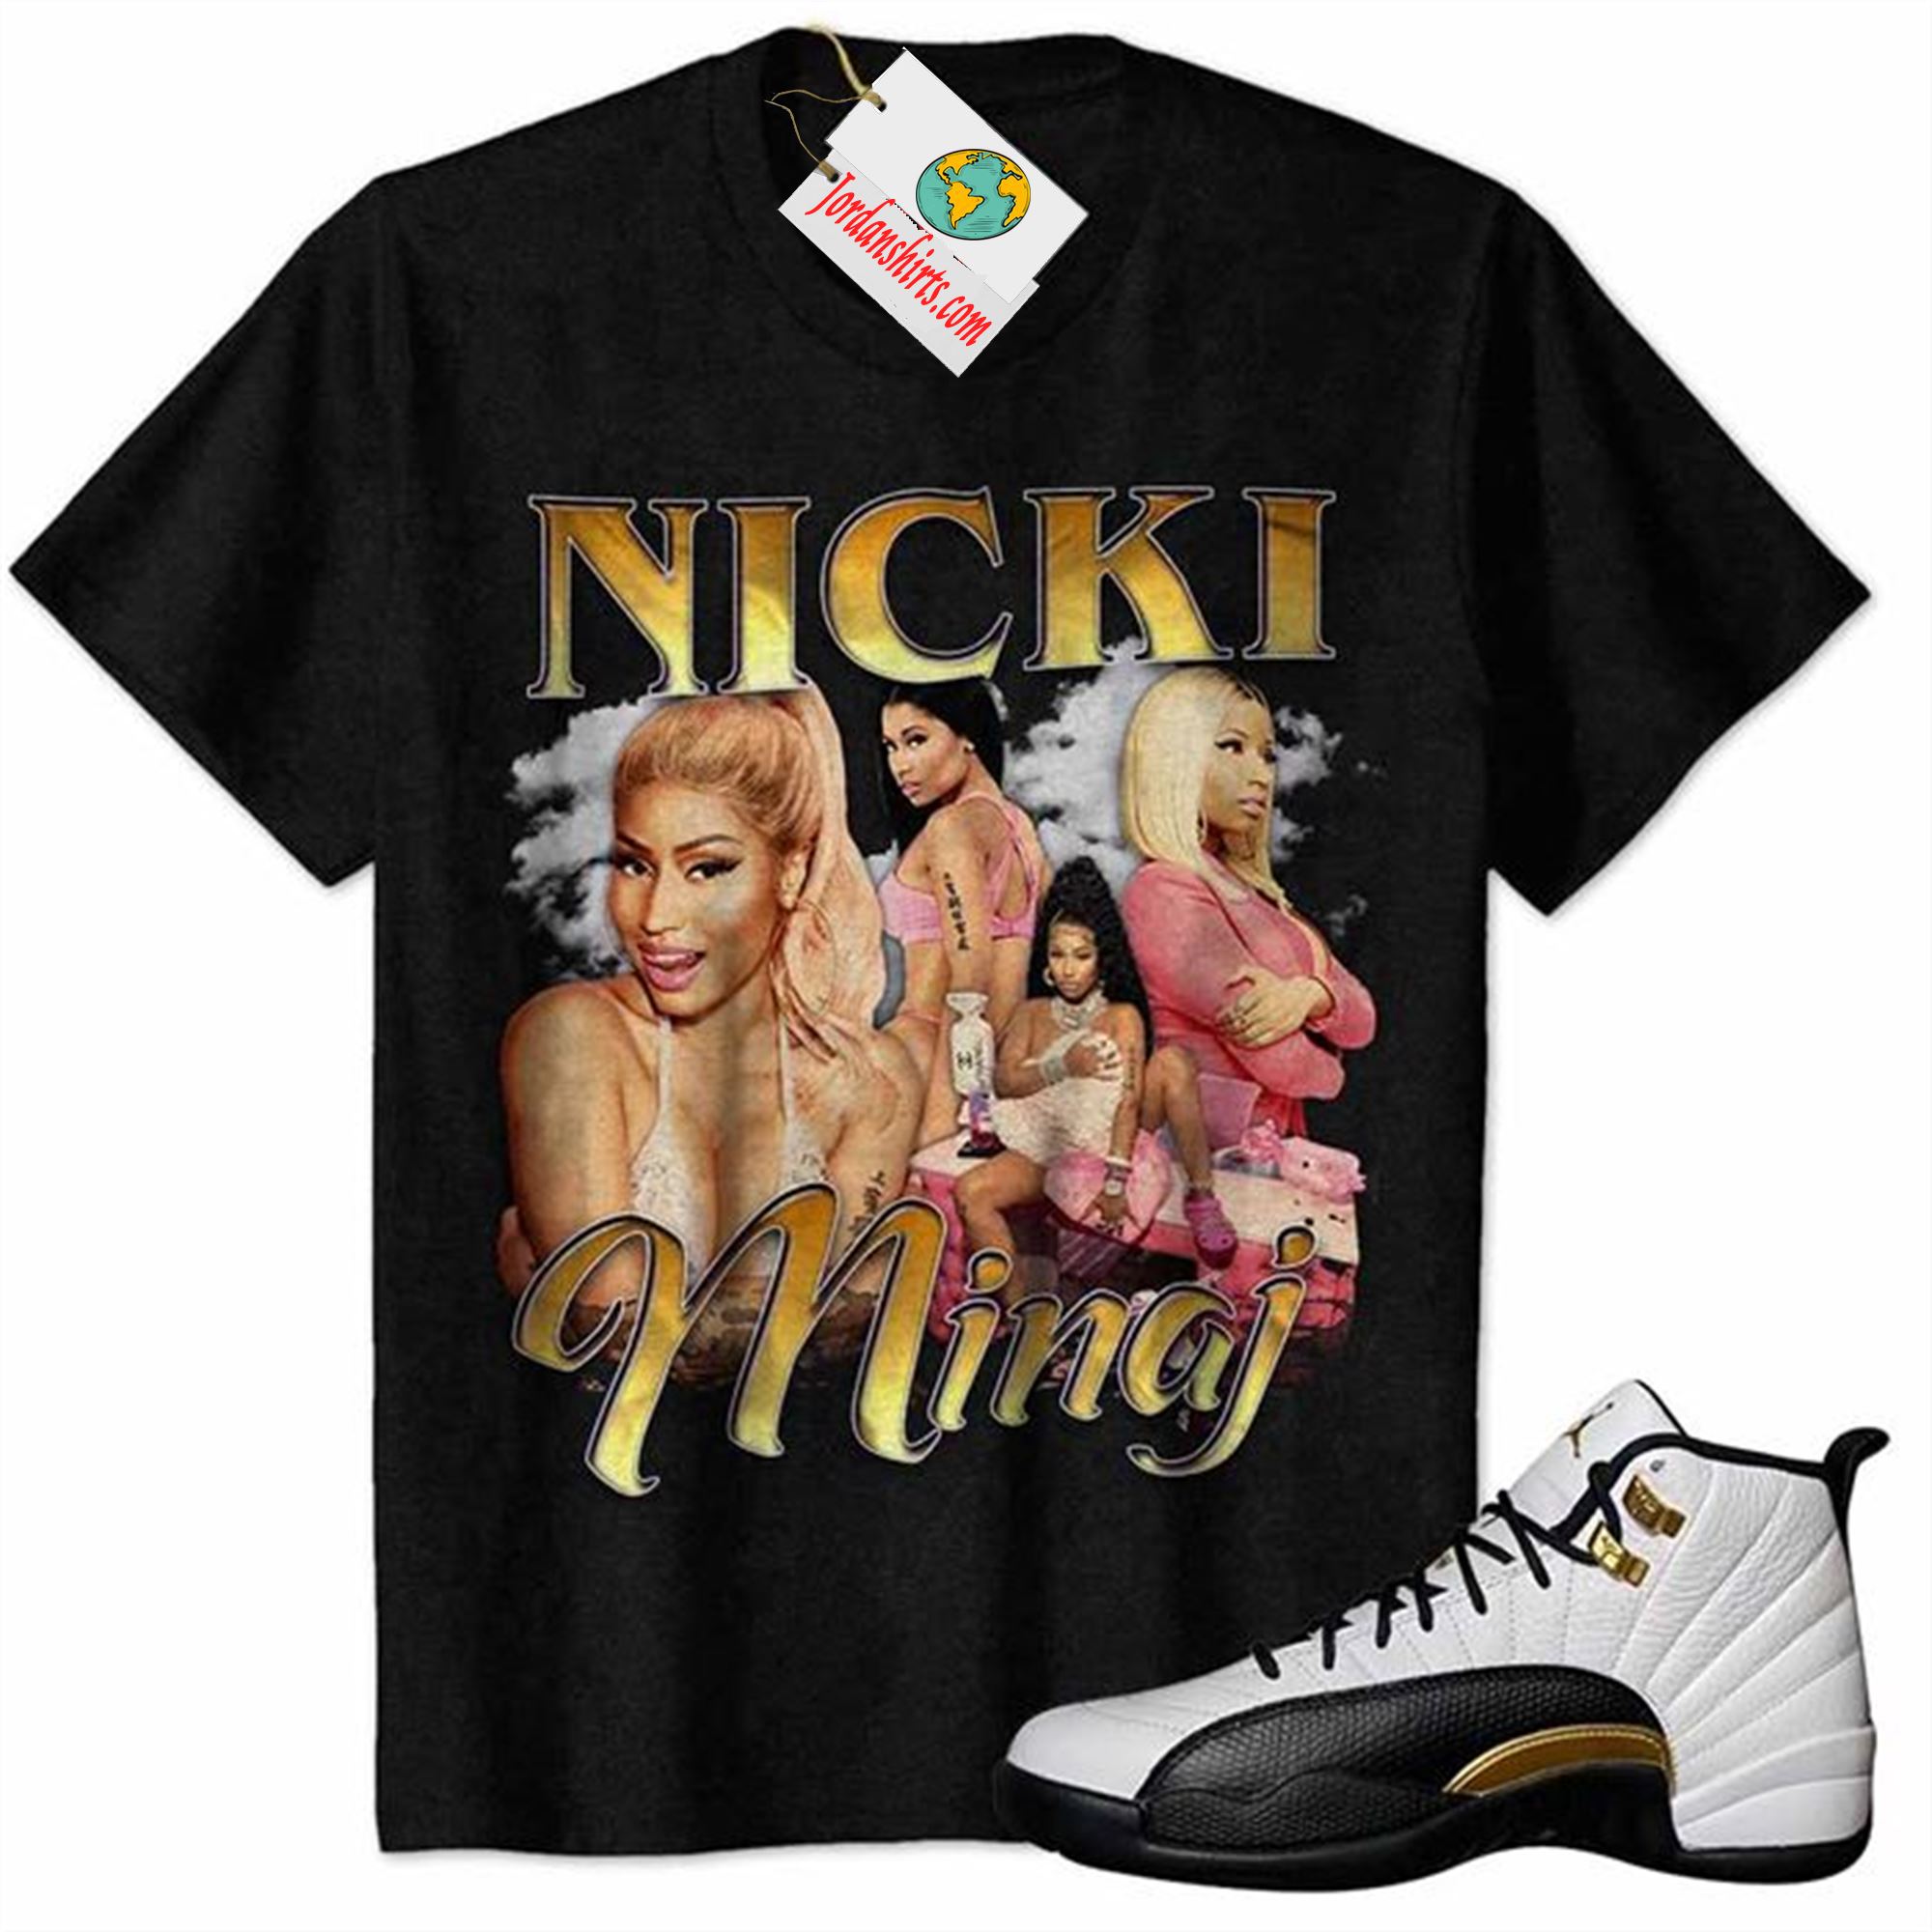 Jordan 12 Shirt, Nicki Minaj Graphic Black Air Jordan 12 Royalty 12s Plus Size Up To 5xl